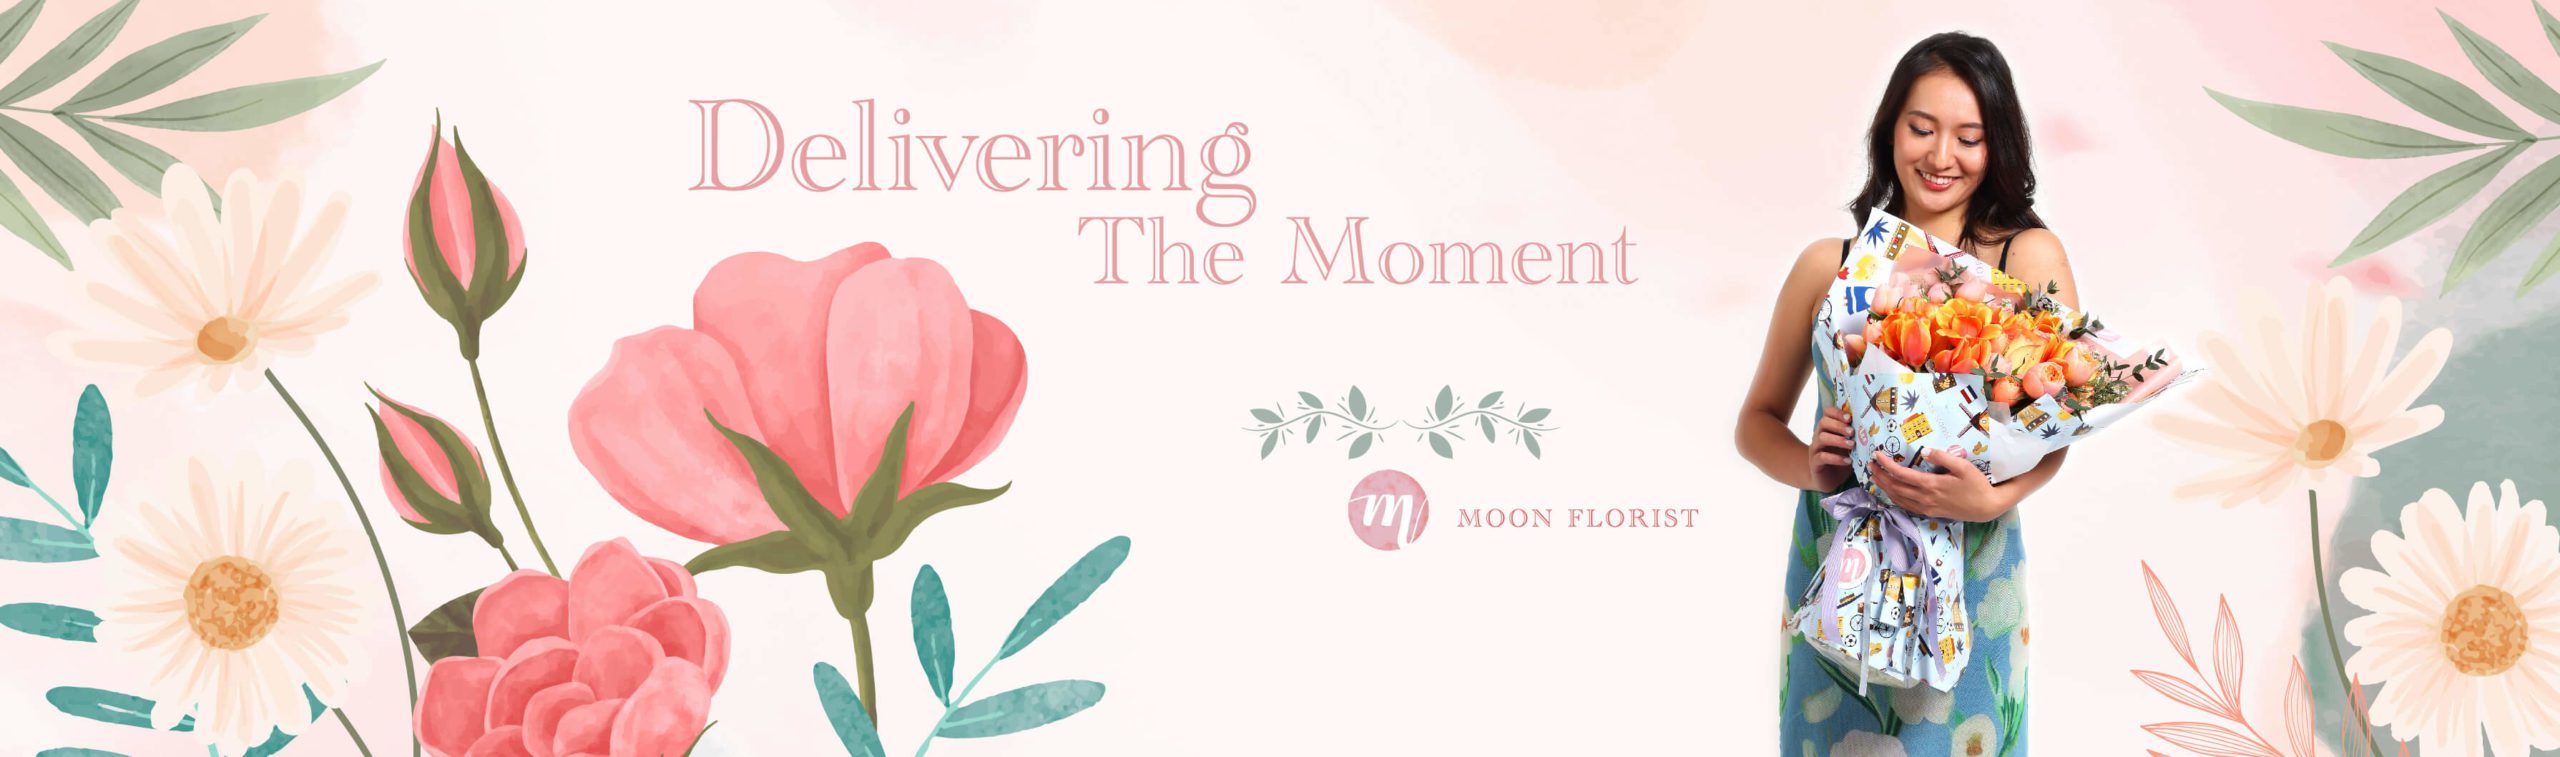 買花, 網上買花, Moon Florist -model banner02